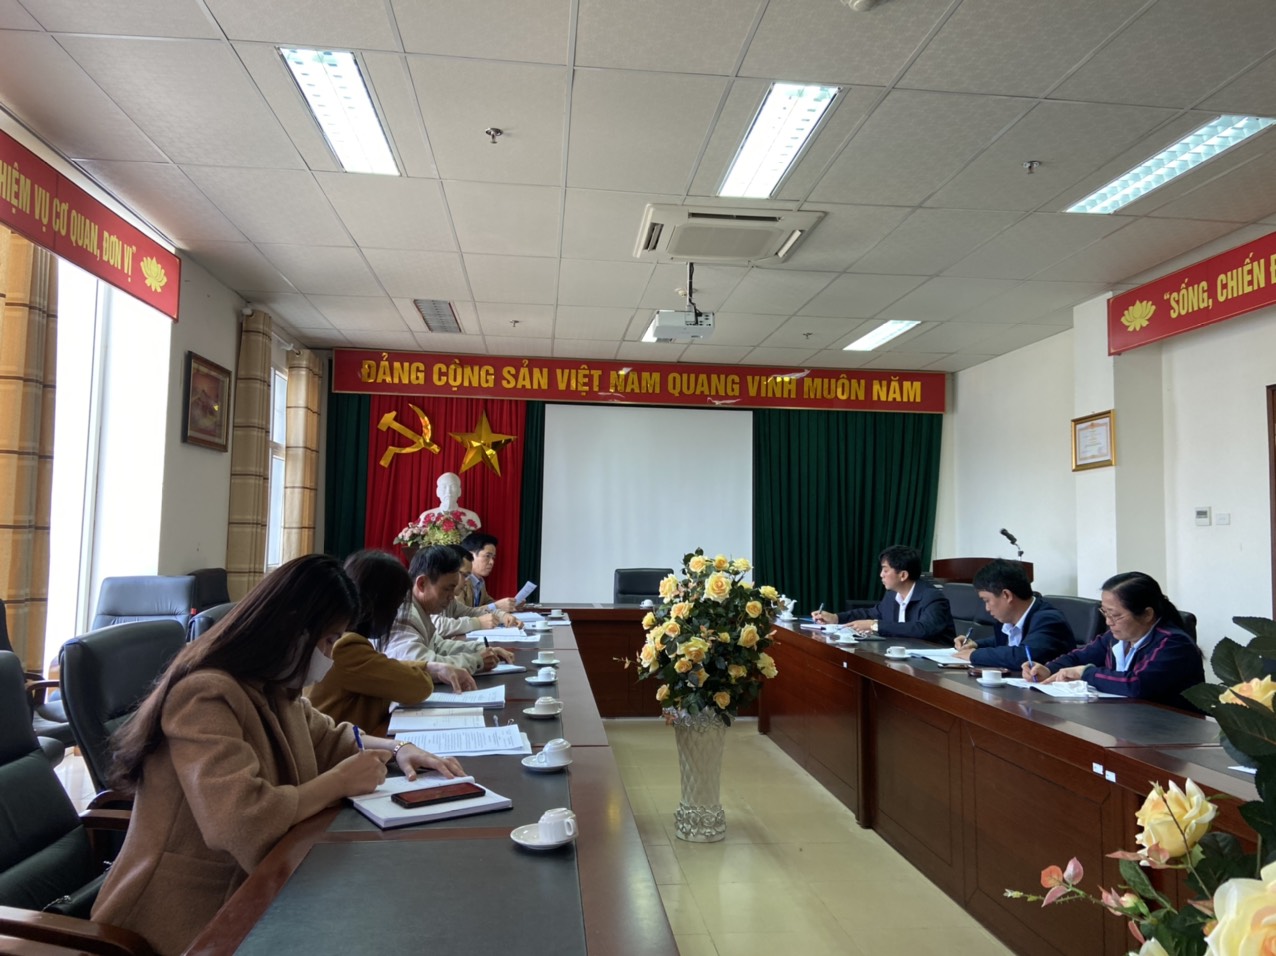 Sở Tài chính công bố Quyết định thanh tra công tác quản lý, sử dụng ngân sách, tiền và tài sản nhà nước năm 2019 đối với Sở Xây dựng tỉnh Lai Châu